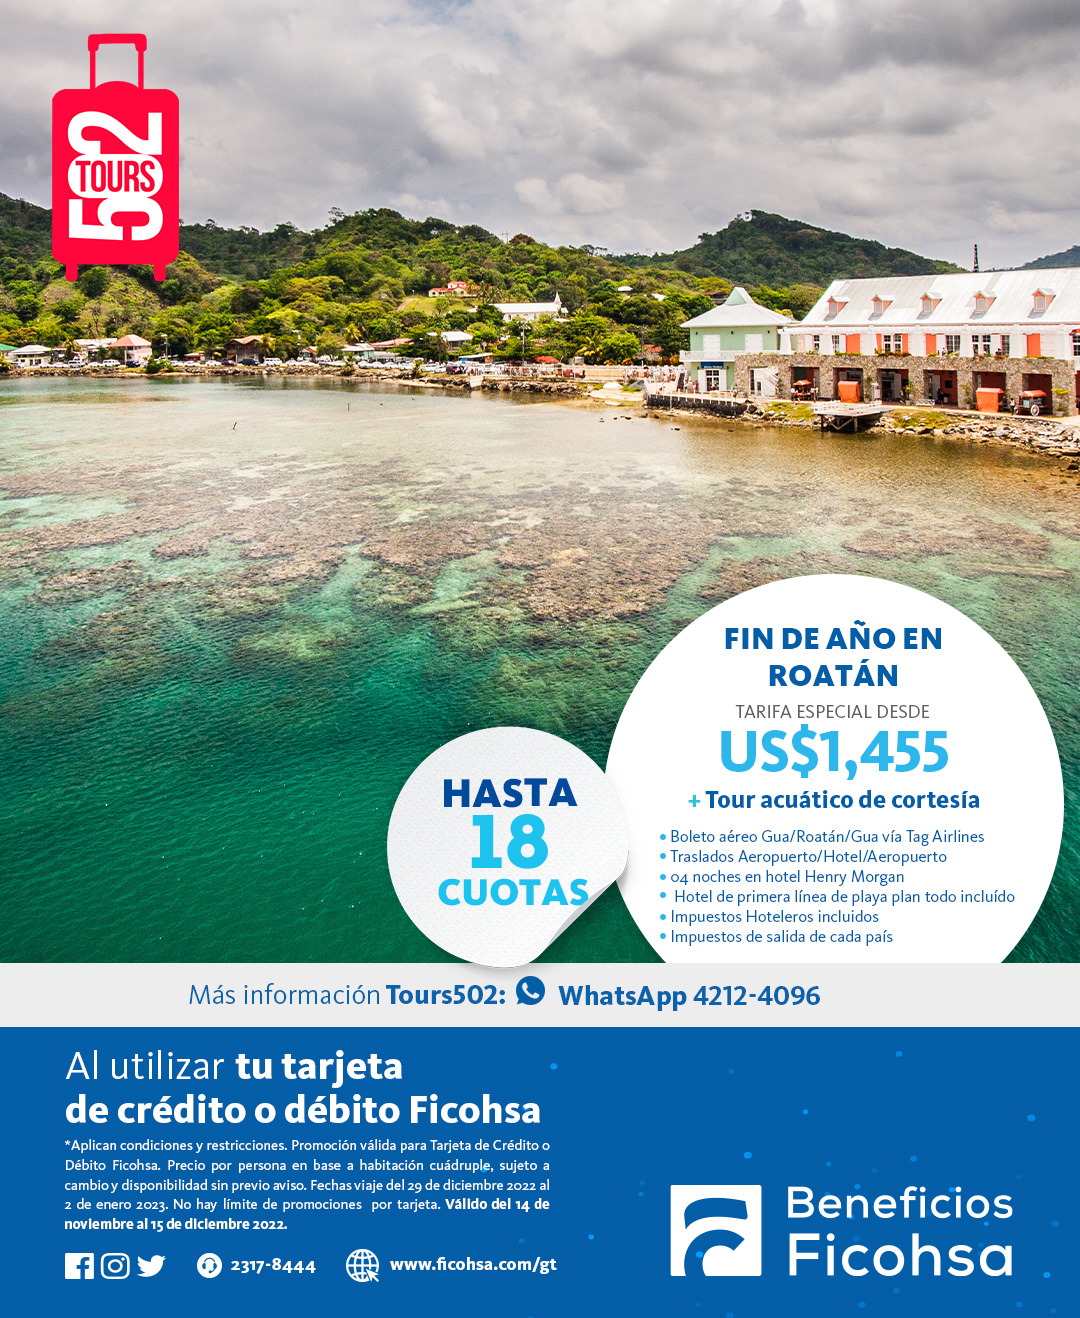 Tu viaje de fin de año a Cuba, Roatán o Panamá a tarifas especiales con Tours 502